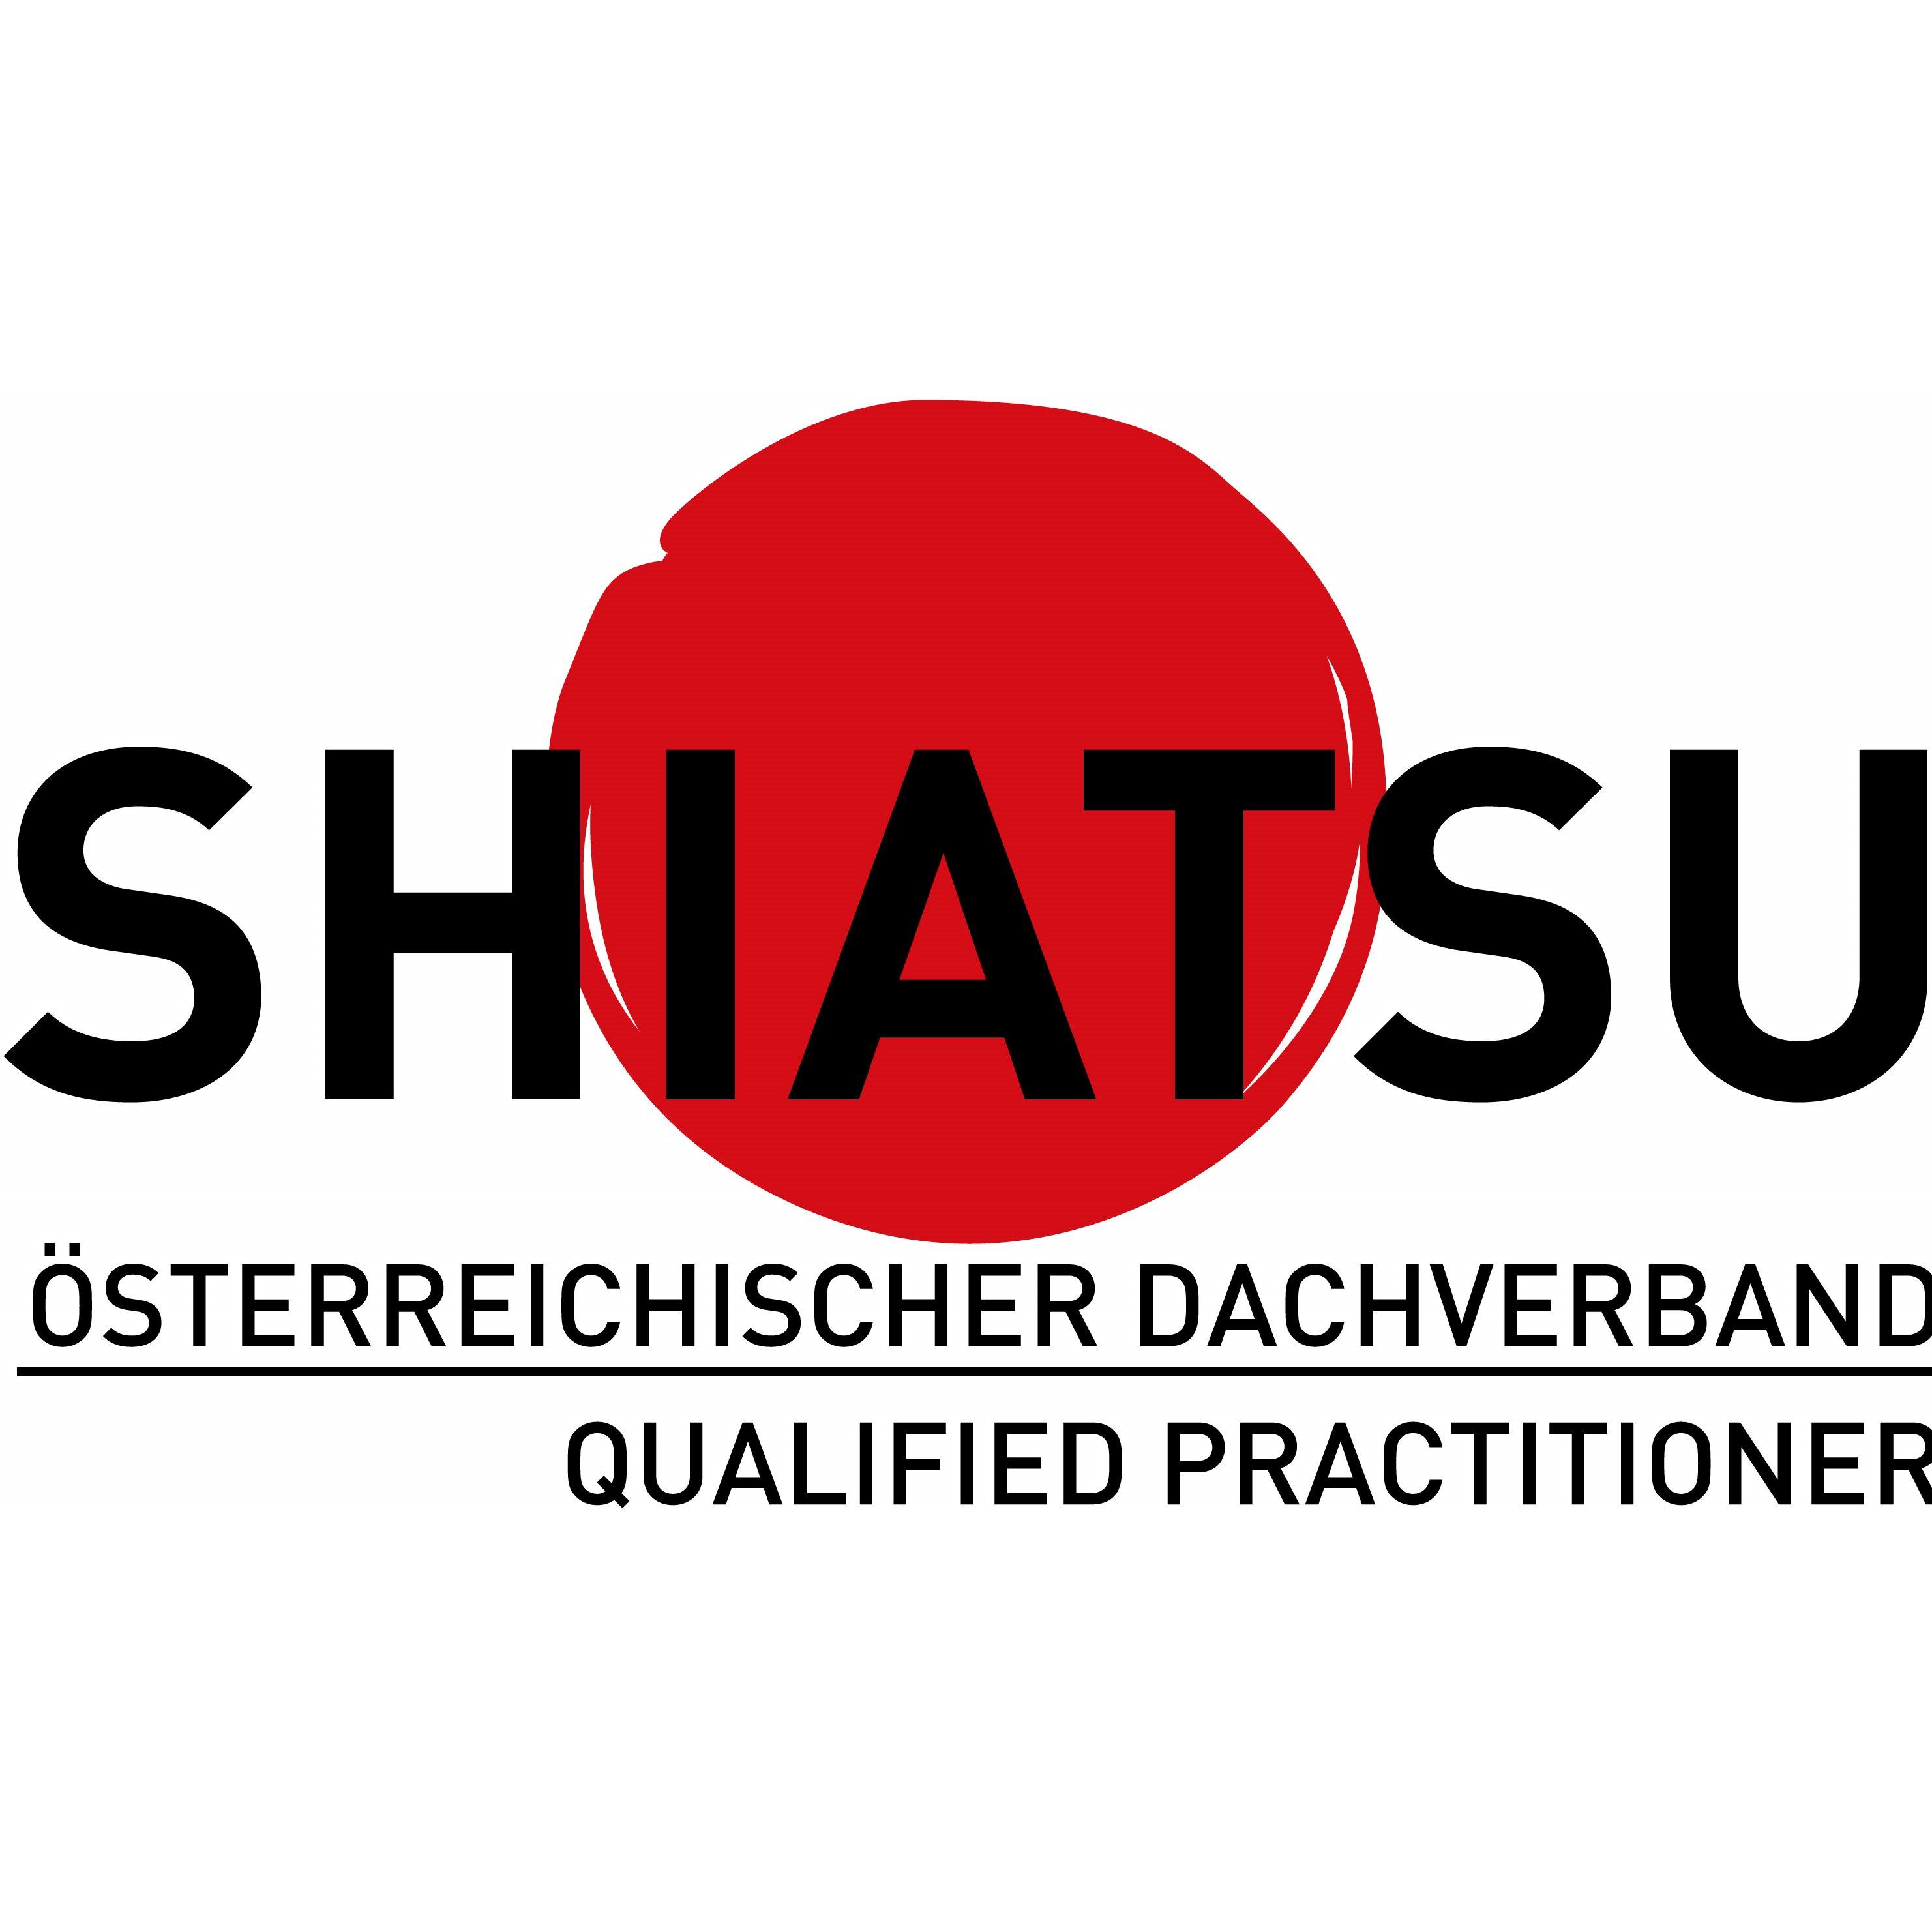 Ganner Bruno Dr. phil. Praxis für Shiatsu u. Körperarbeit Logo